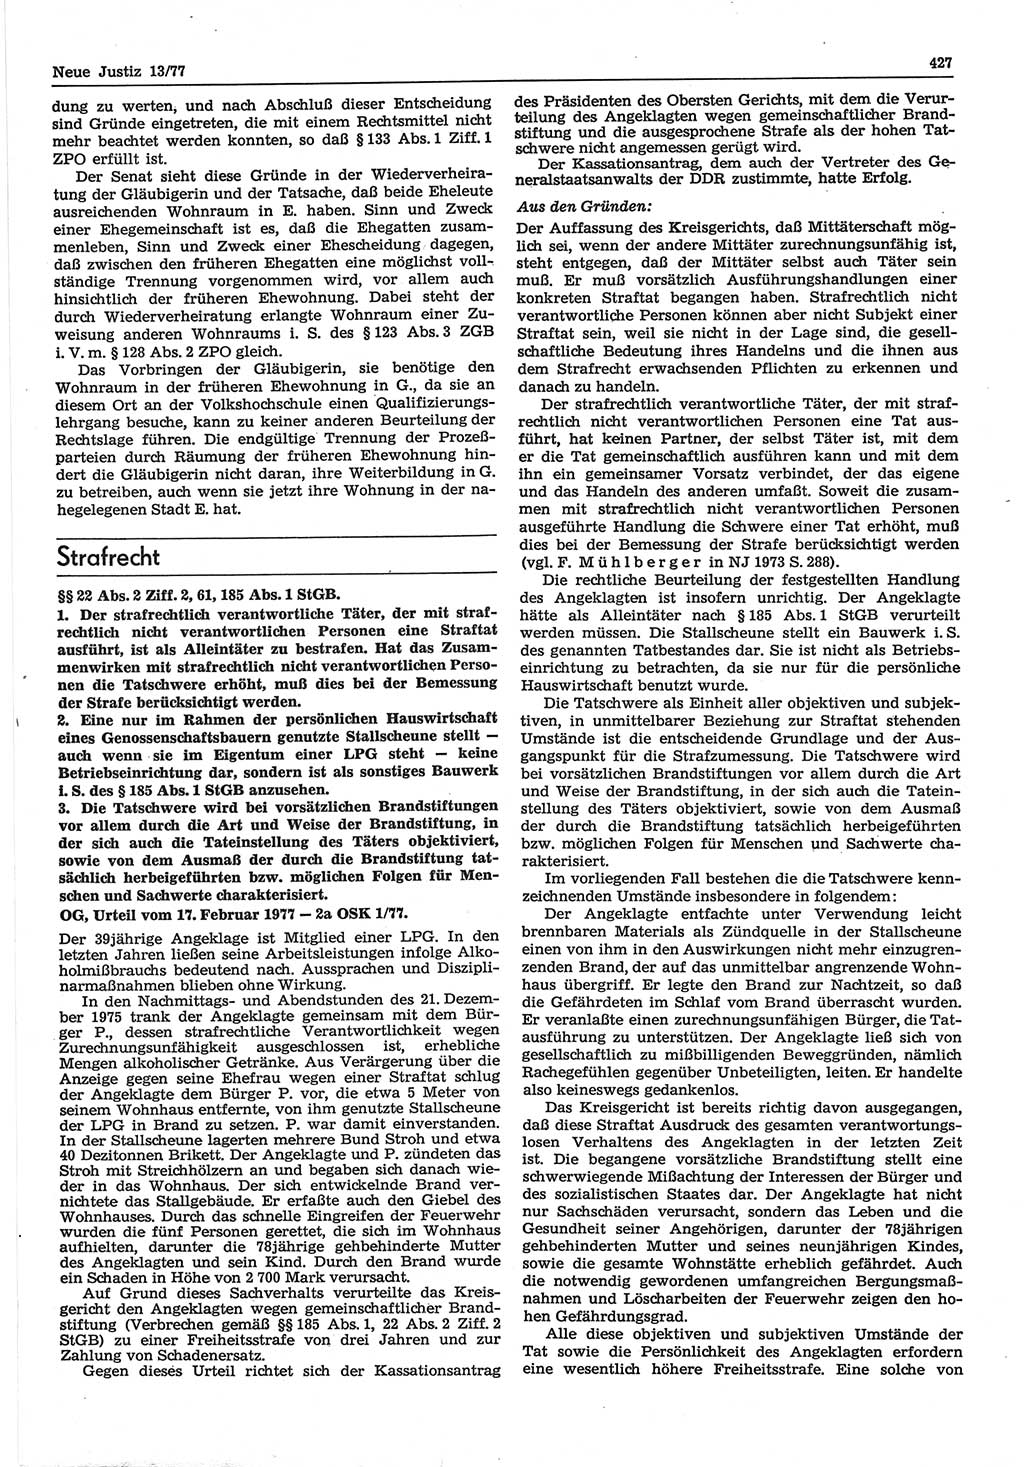 Neue Justiz (NJ), Zeitschrift für Recht und Rechtswissenschaft-Zeitschrift, sozialistisches Recht und Gesetzlichkeit, 31. Jahrgang 1977, Seite 427 (NJ DDR 1977, S. 427)